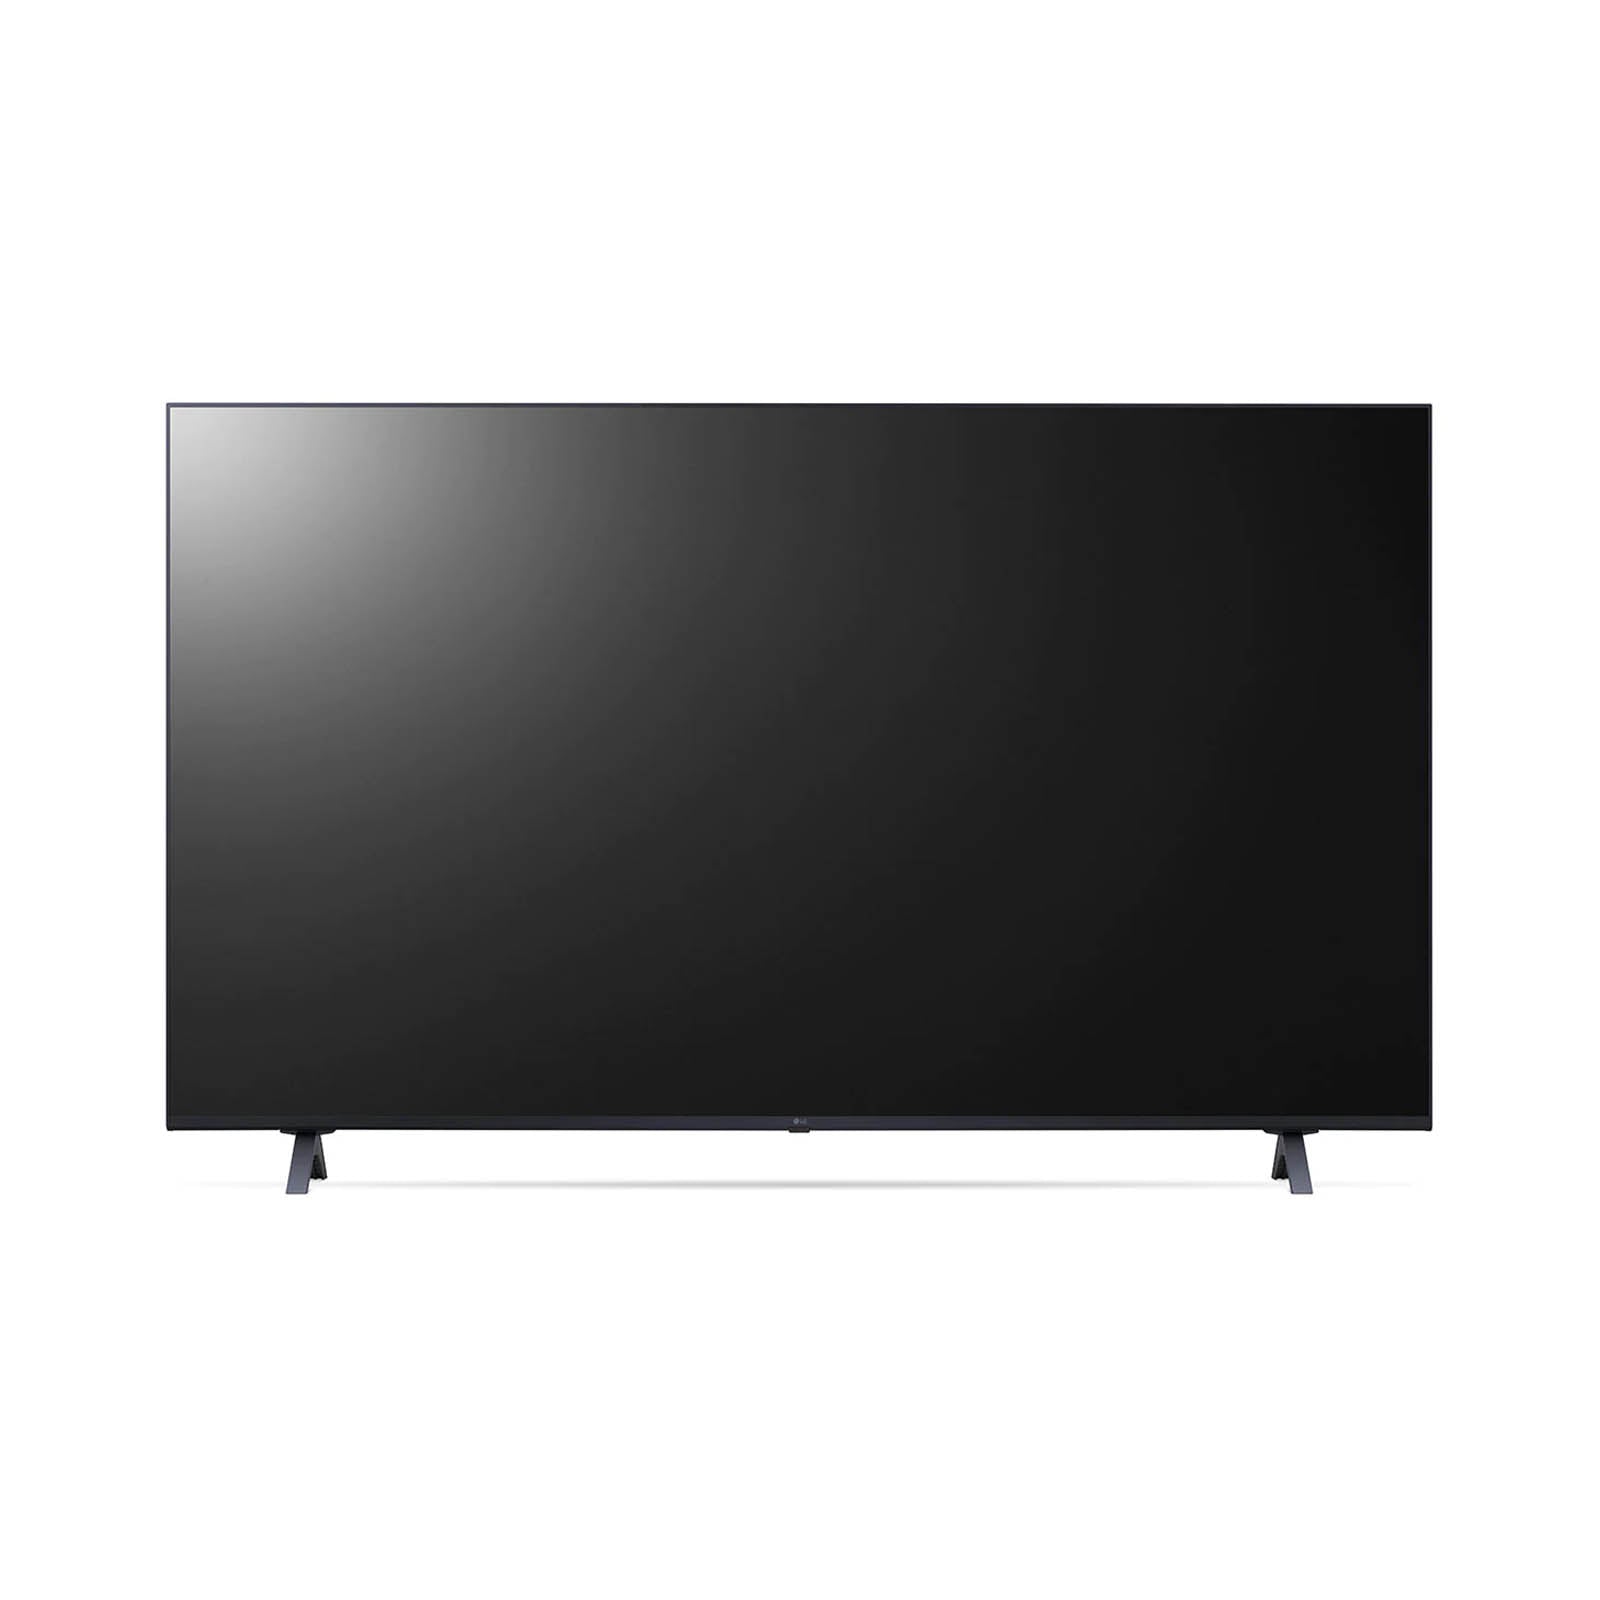 LG Pantalla LG UHD TV AI ThinQ 4K 55